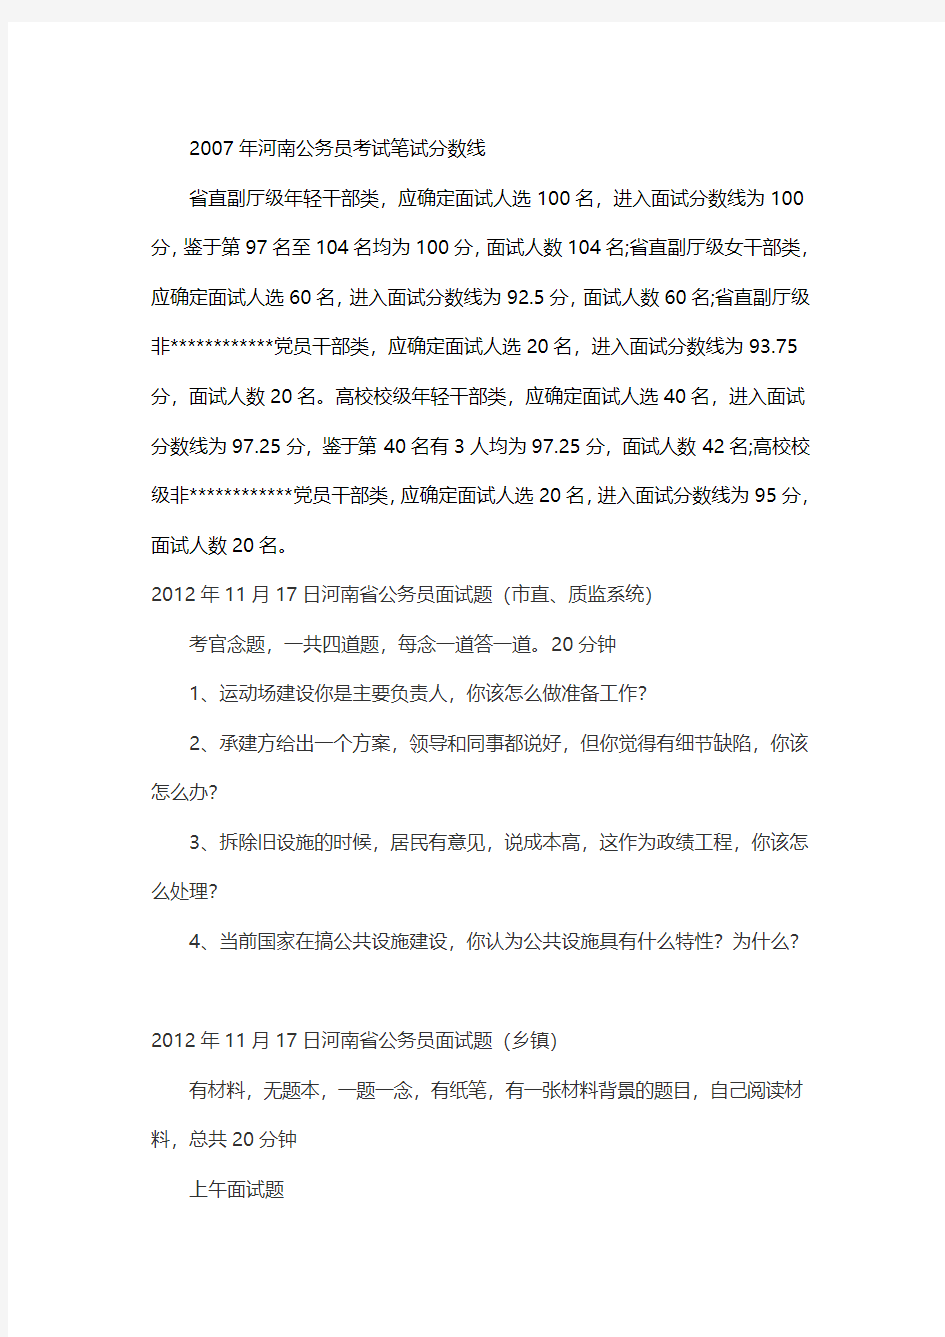 2014河南省公务员考试笔试合格分数线